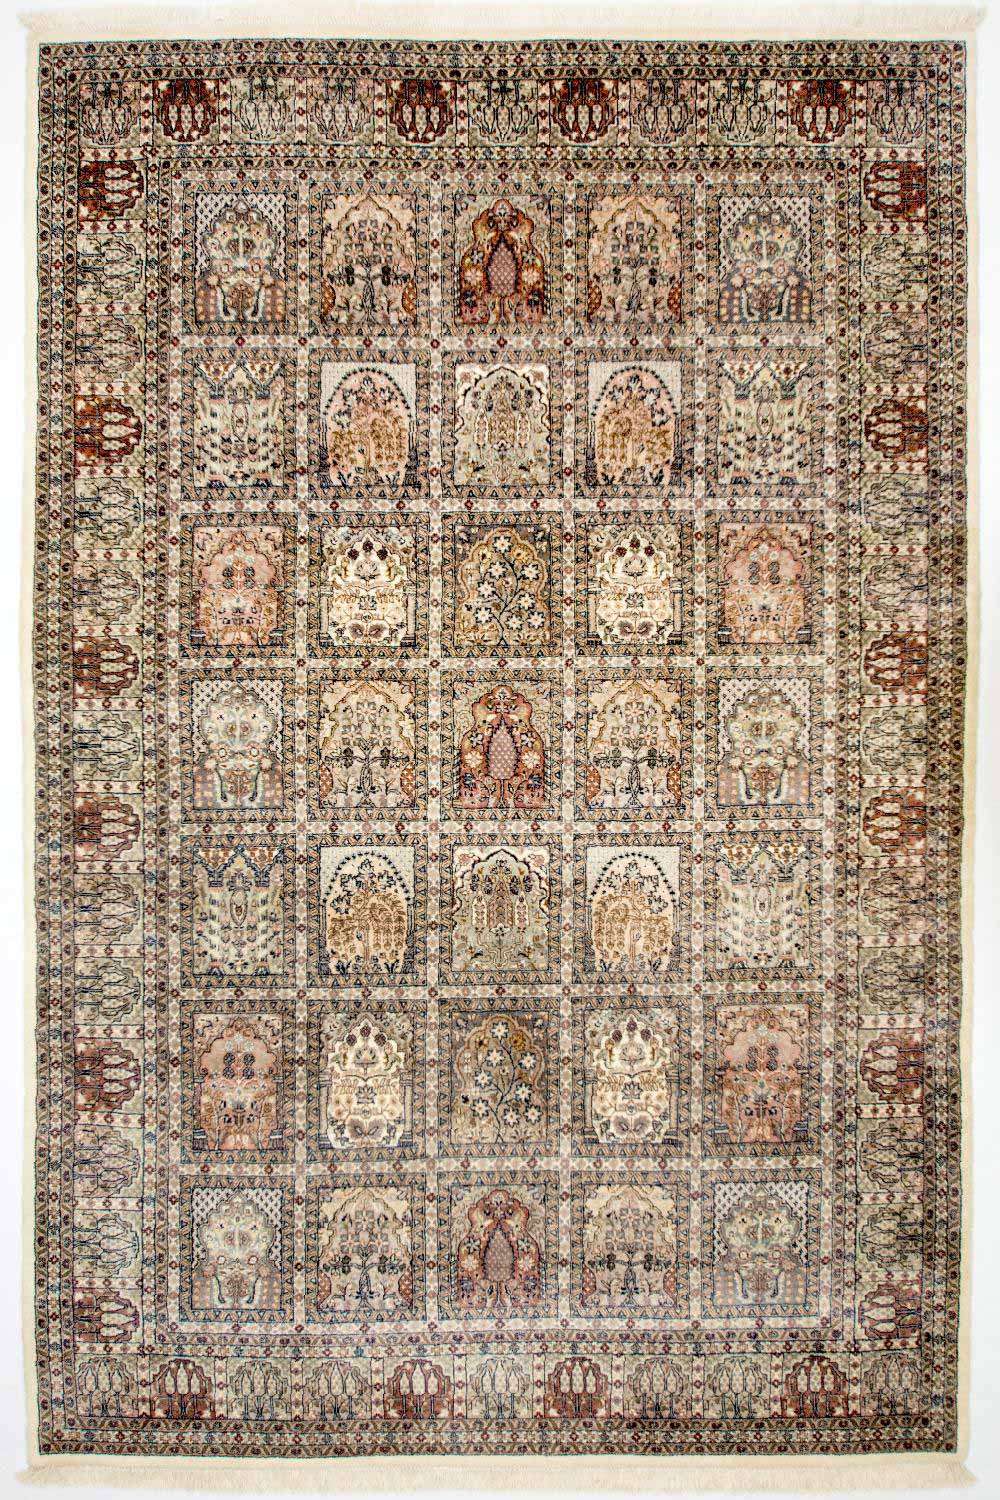 Persisk teppe - Nomadisk - 304 x 209 cm - flerfarget